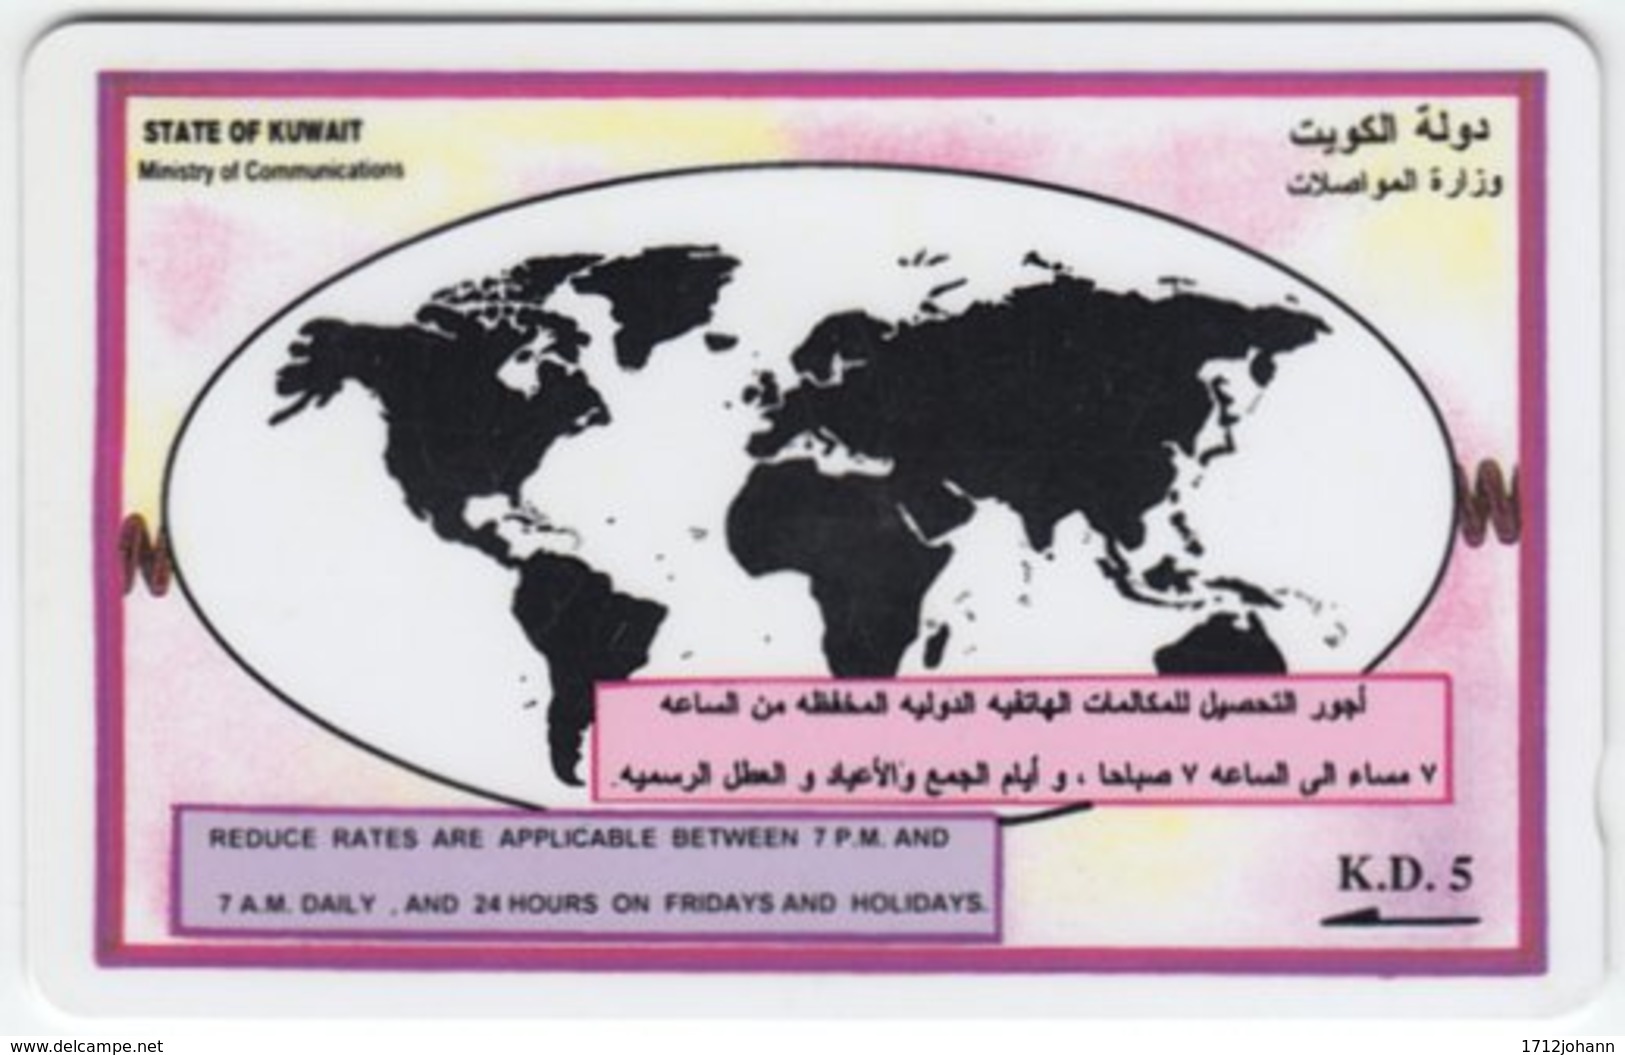 KUWAIT A-228 Magnetic Comm. - Map, Globe - 22KWTA - Used - Kuwait